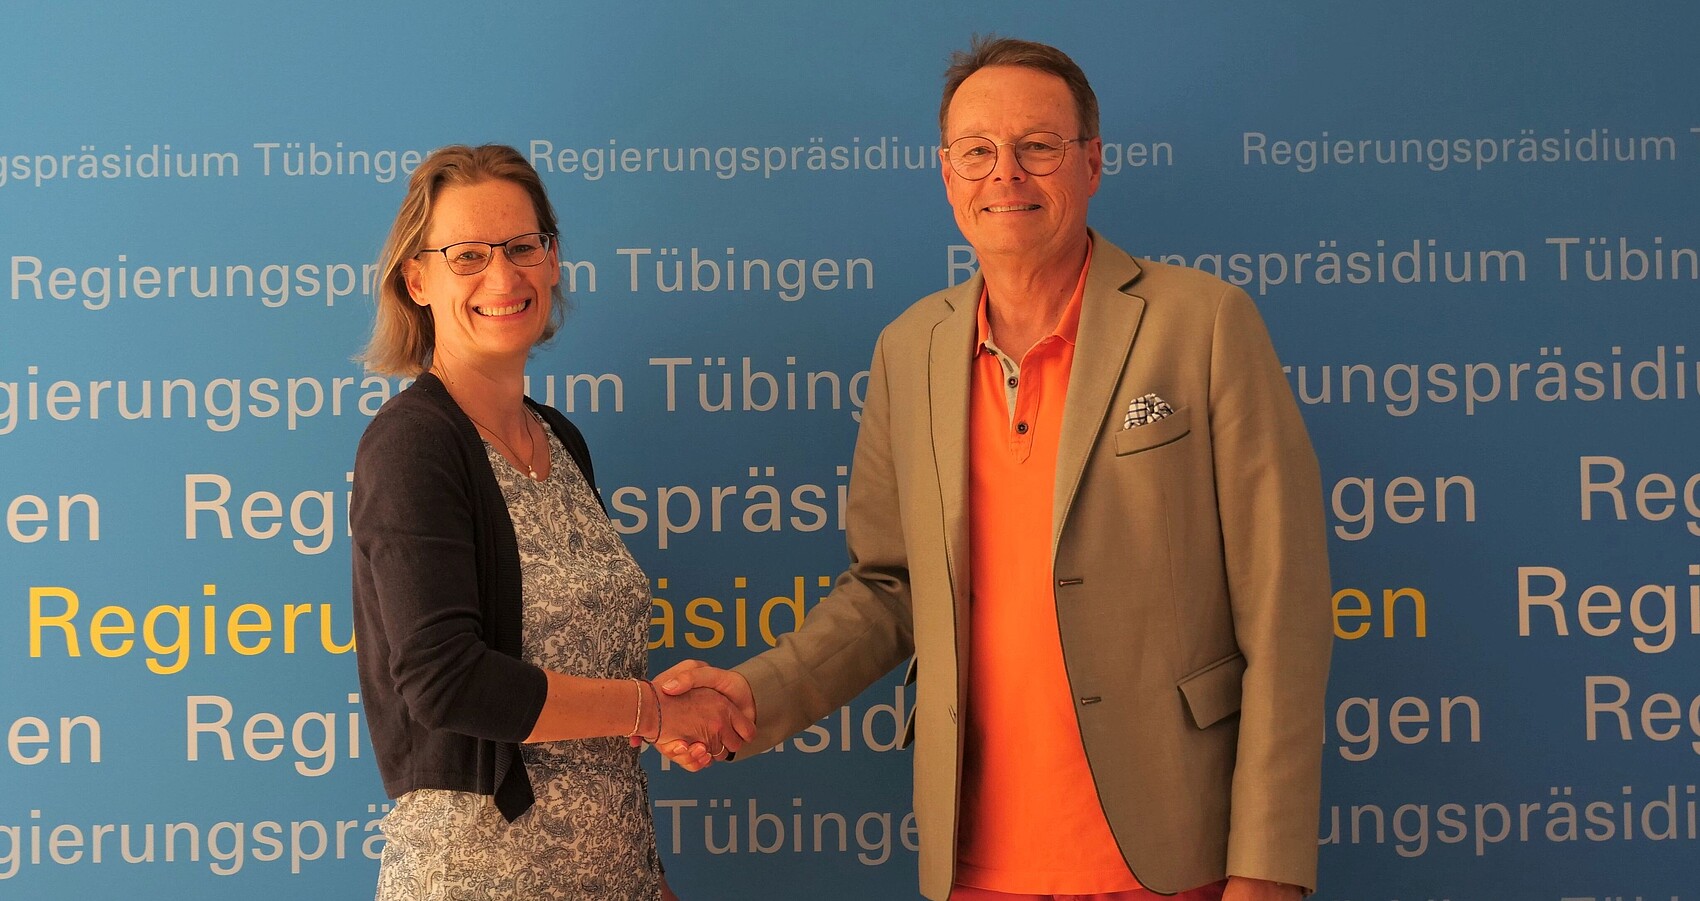 Das Foto zeigt Claudia Schneiderhan und Regierungspräsident Klaus Tappeser die sich die Hand reichen vor einer Plakatwand des RP Tübingen